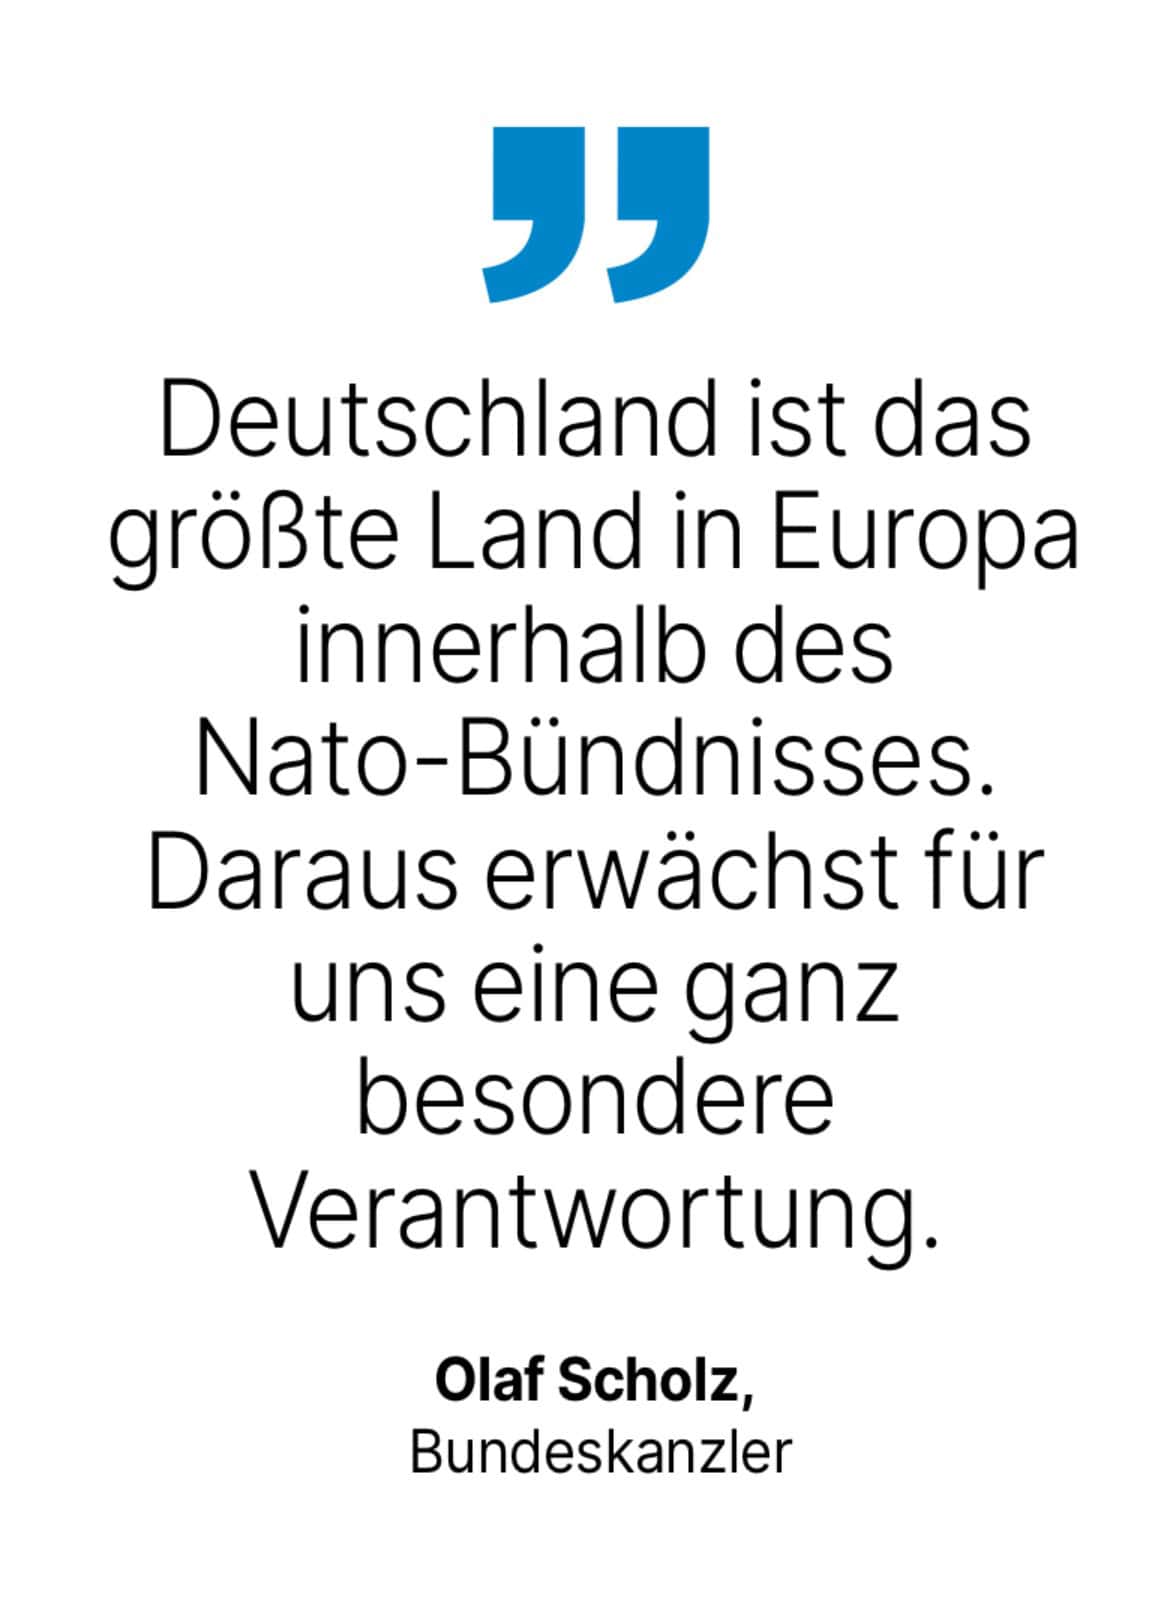 Olaf Scholz, Bundeskanzler: Deutschland ist das größte Land in Europa innerhalb des Nato-Bündnisses. Daraus erwächst für uns eine ganz besondere Verantwortung.